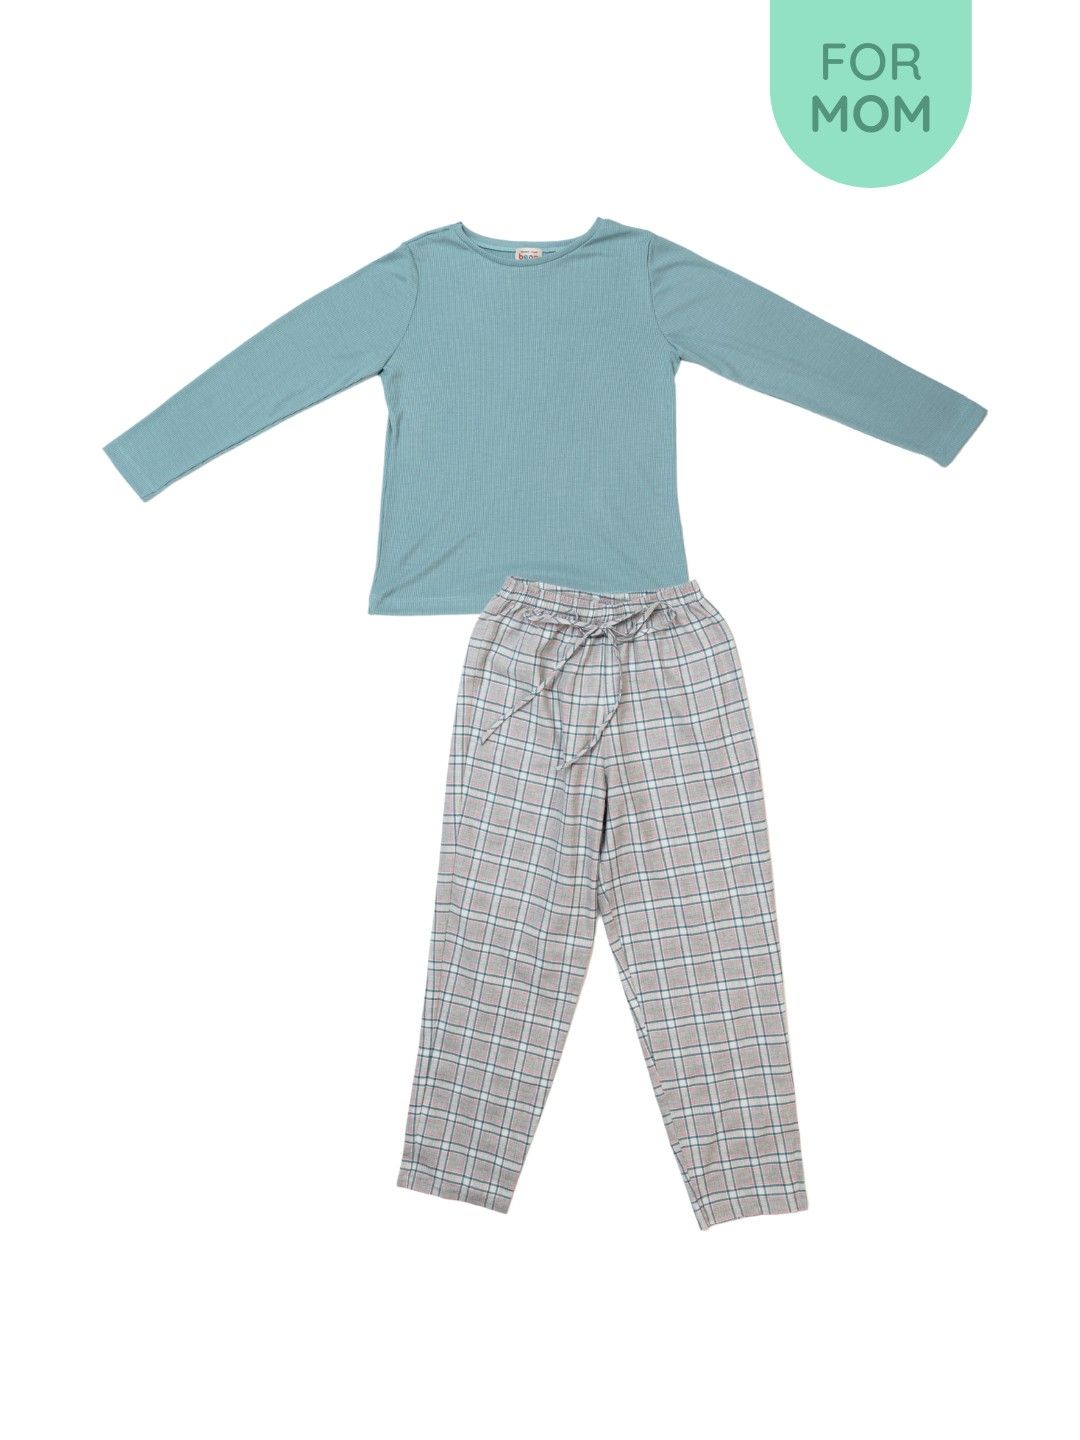 bean fashion Plaid Sleep Pajama Set for Mom